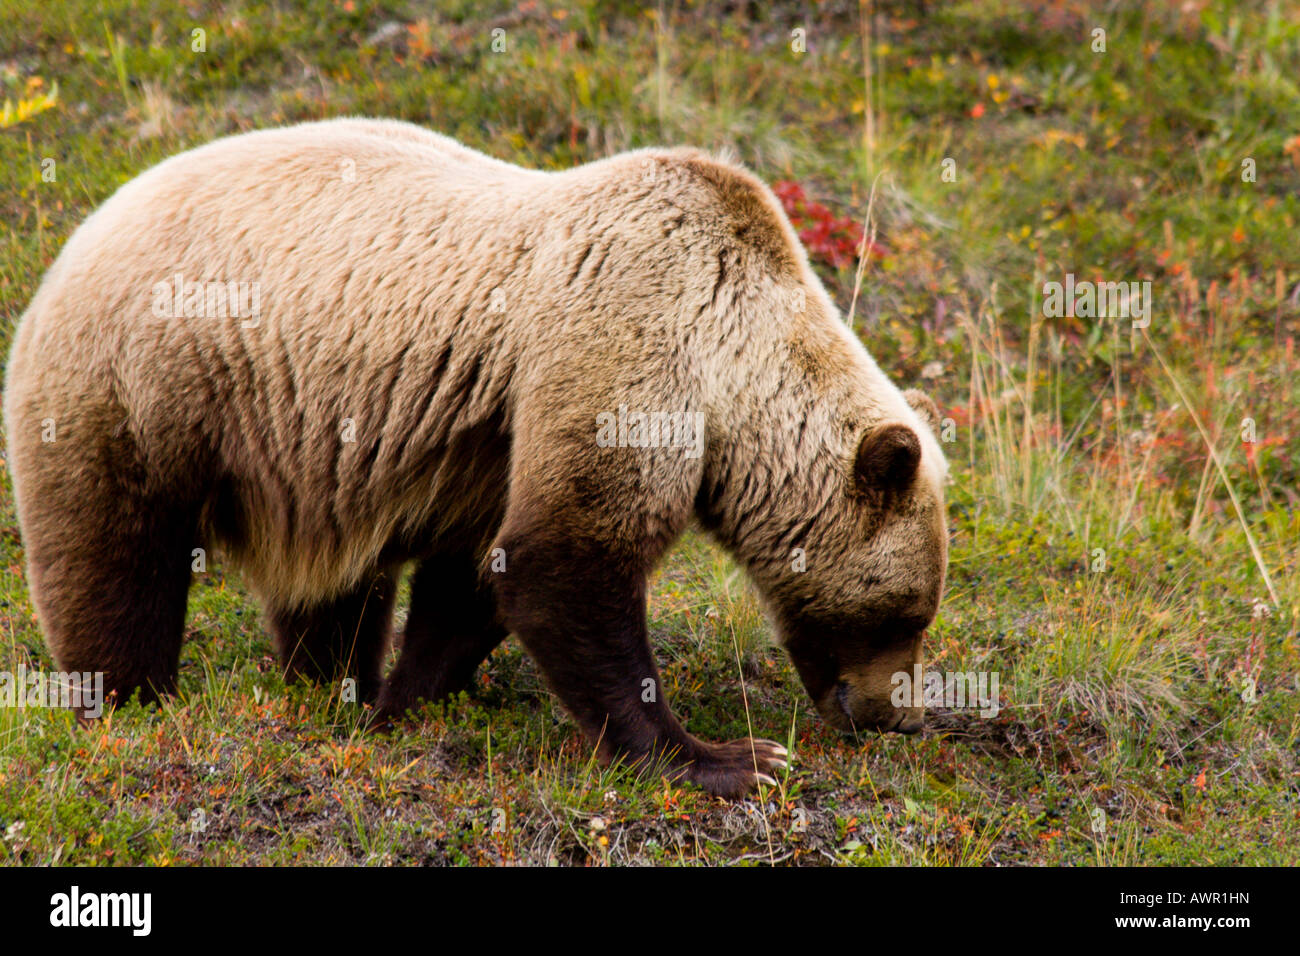 Maschio di Orso grizzly (Ursus arctos horribilis) mangiando i frutti di bosco sulla tundra in autunno, Alaska, STATI UNITI D'AMERICA Foto Stock